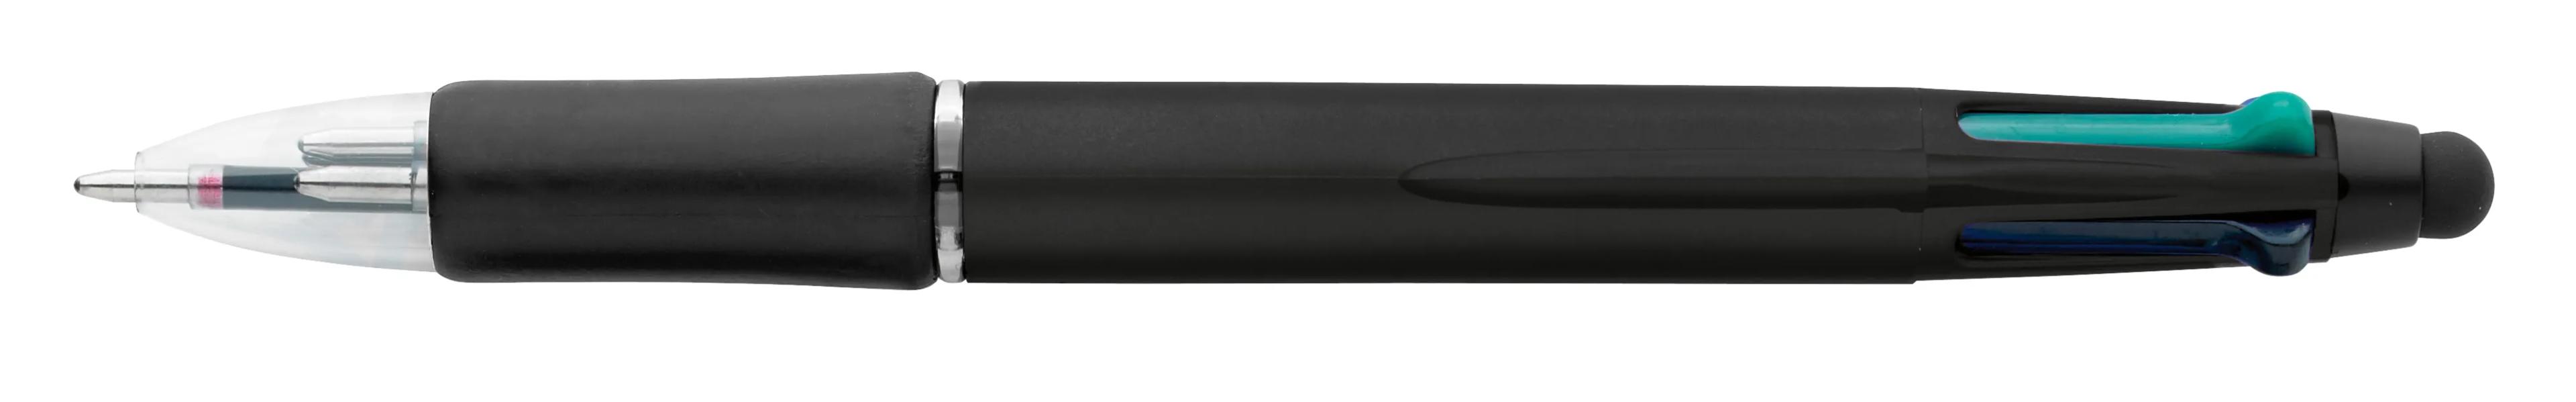 Orbitor Metallic Stylus Pen 8 of 56